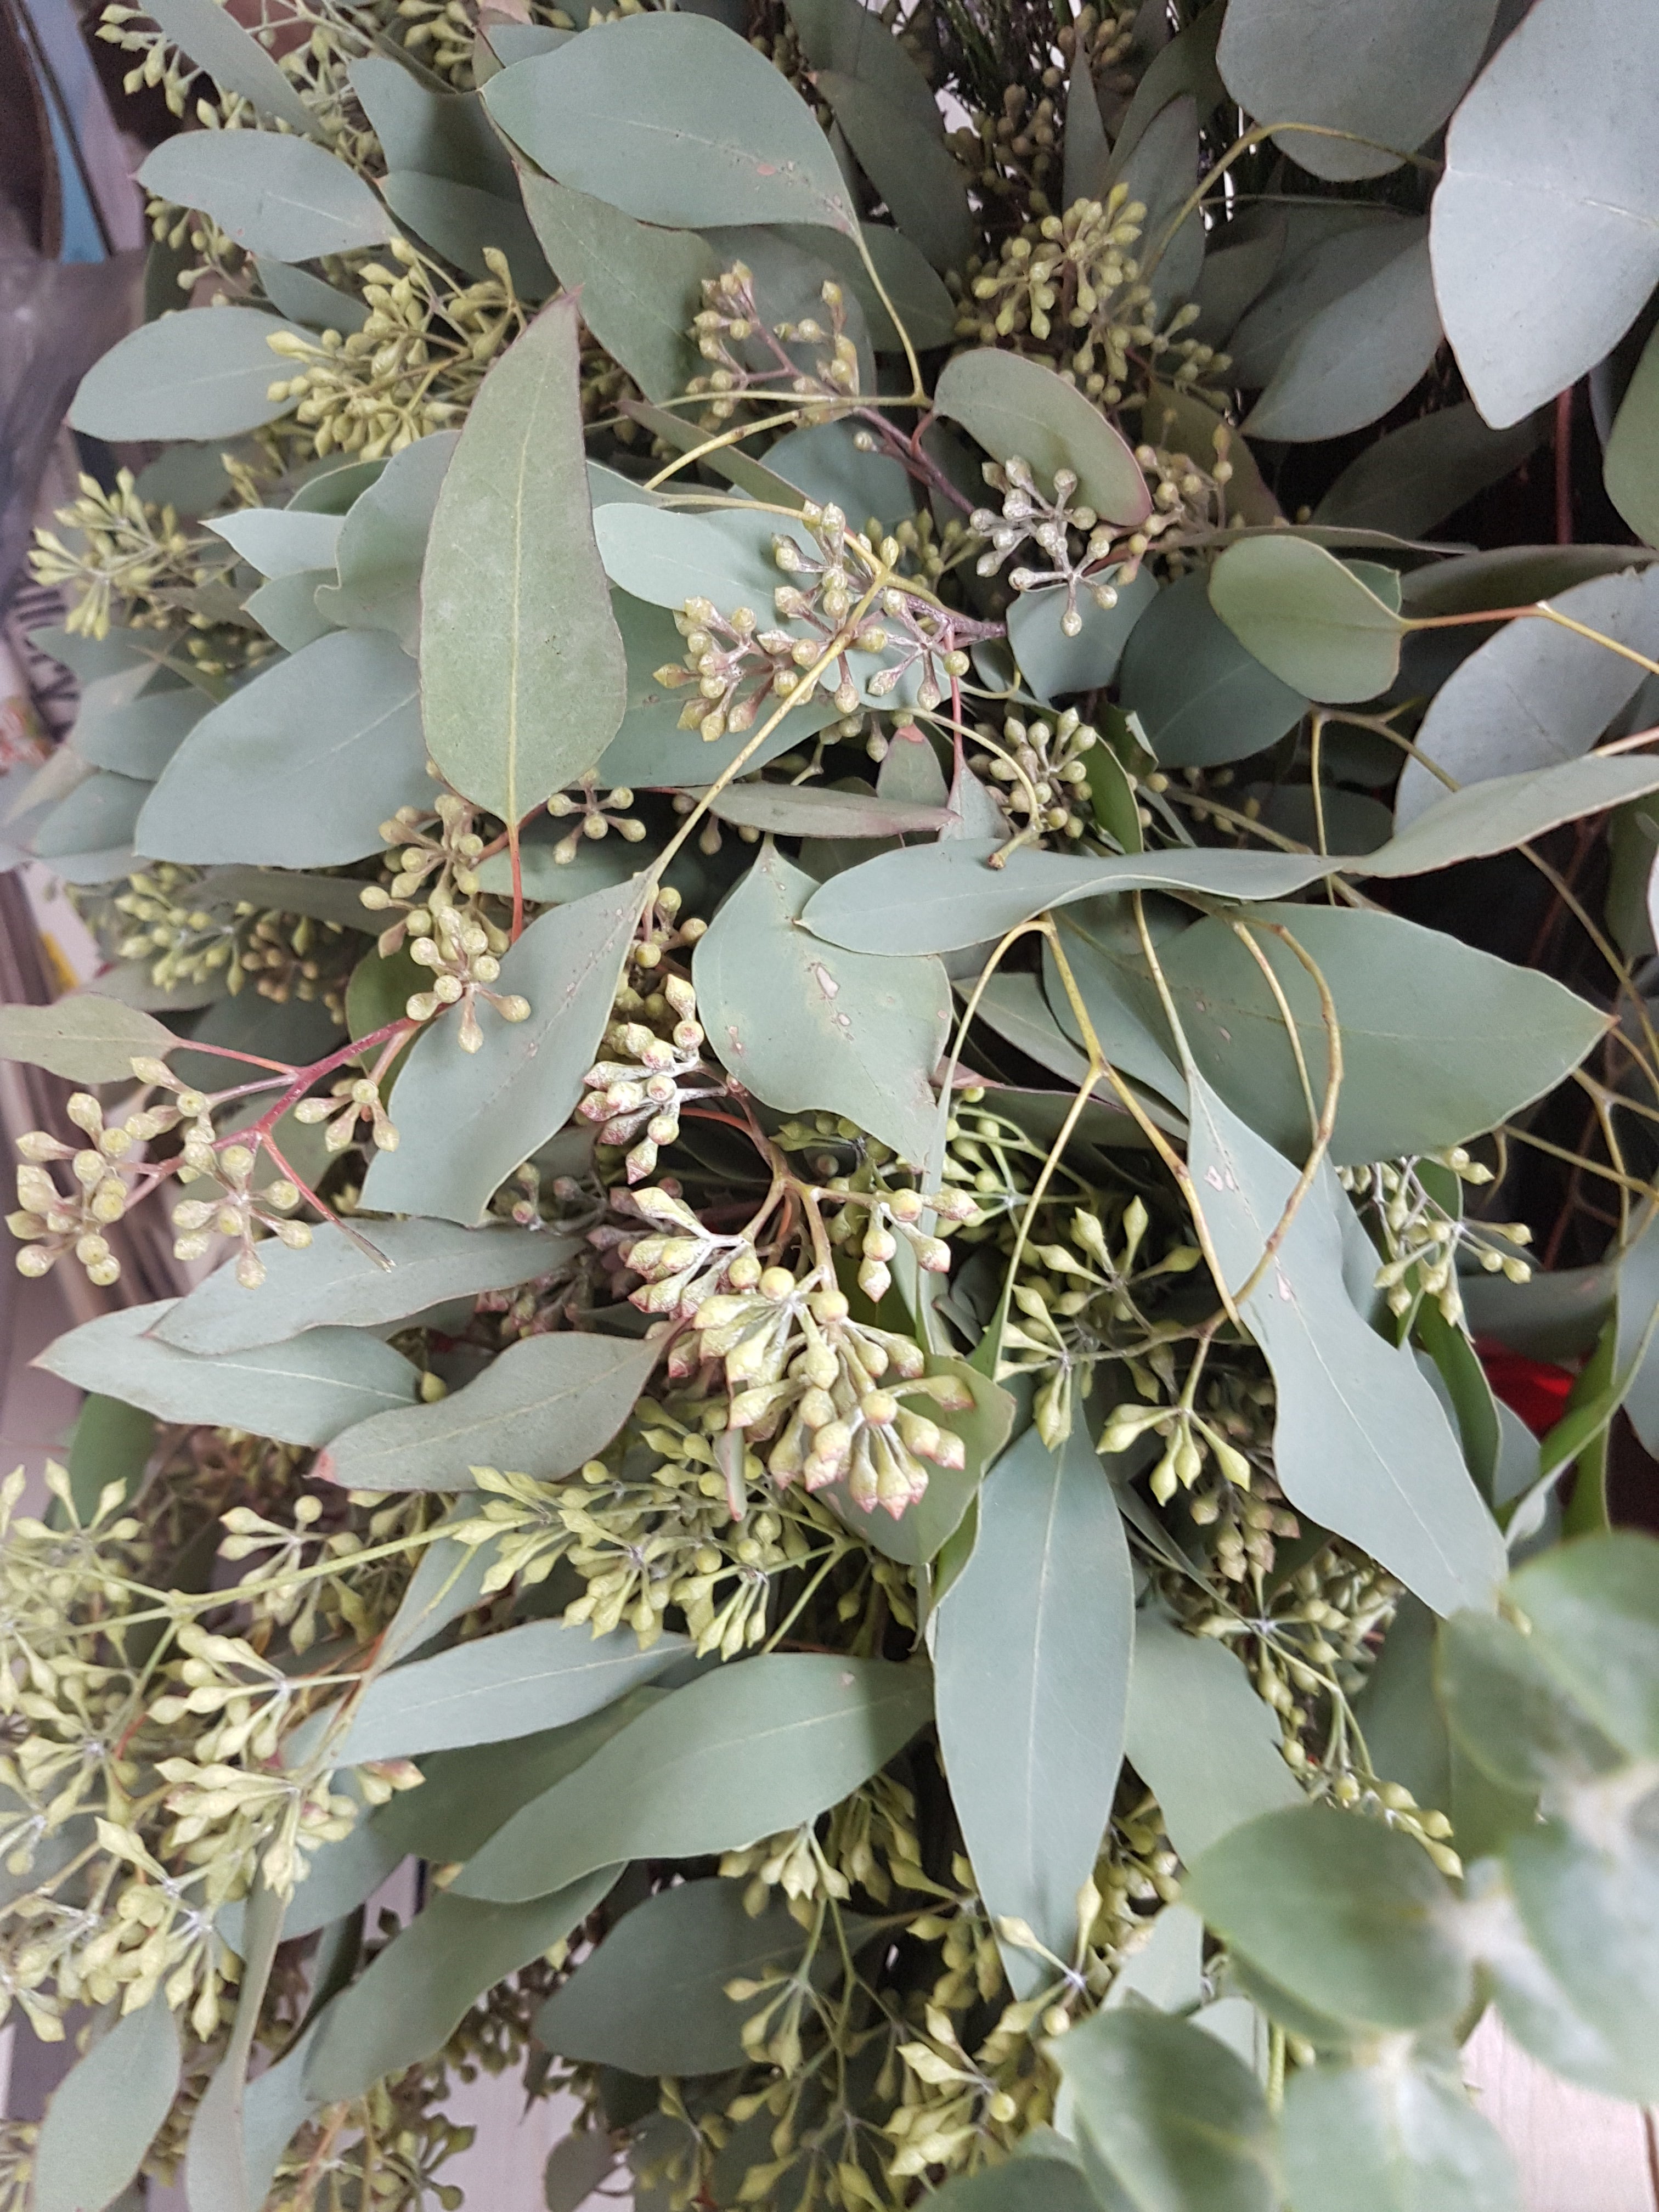 Seeded eucalyptus